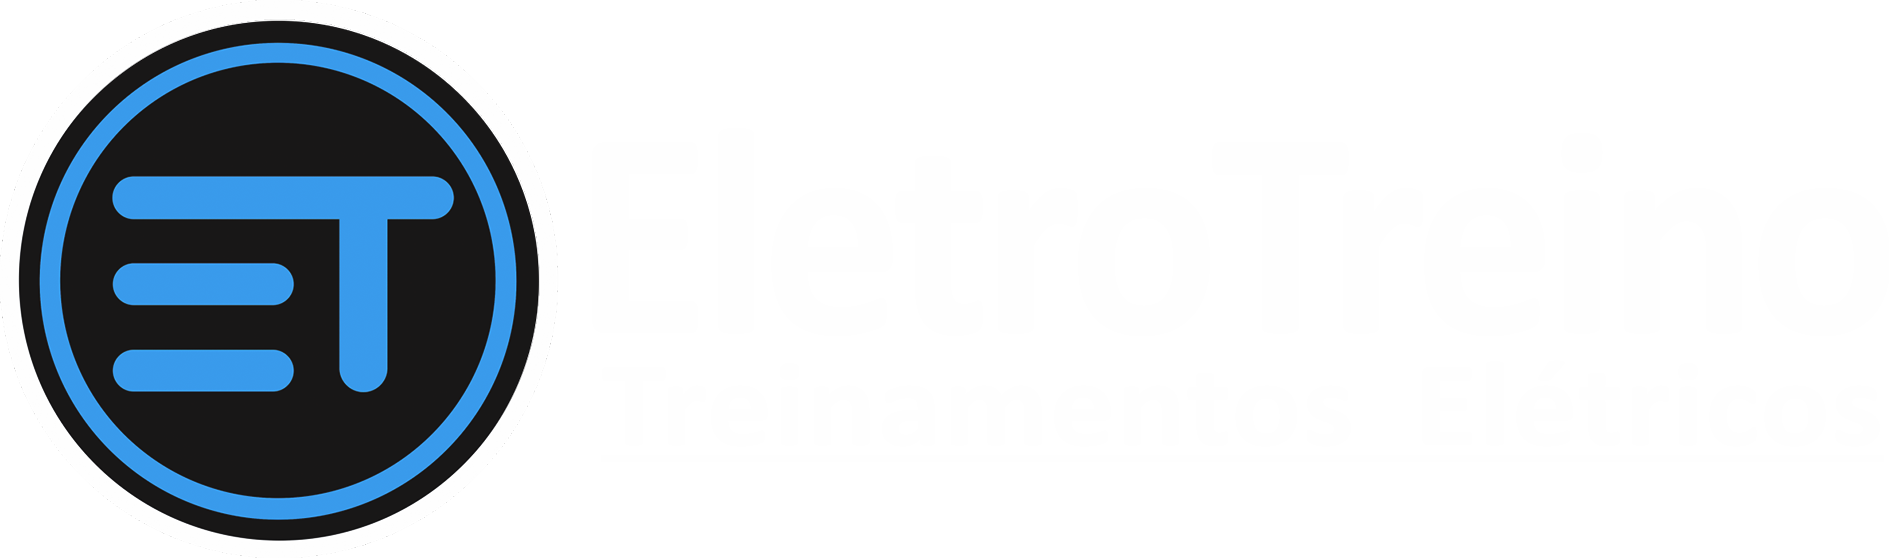 Eletrotreino